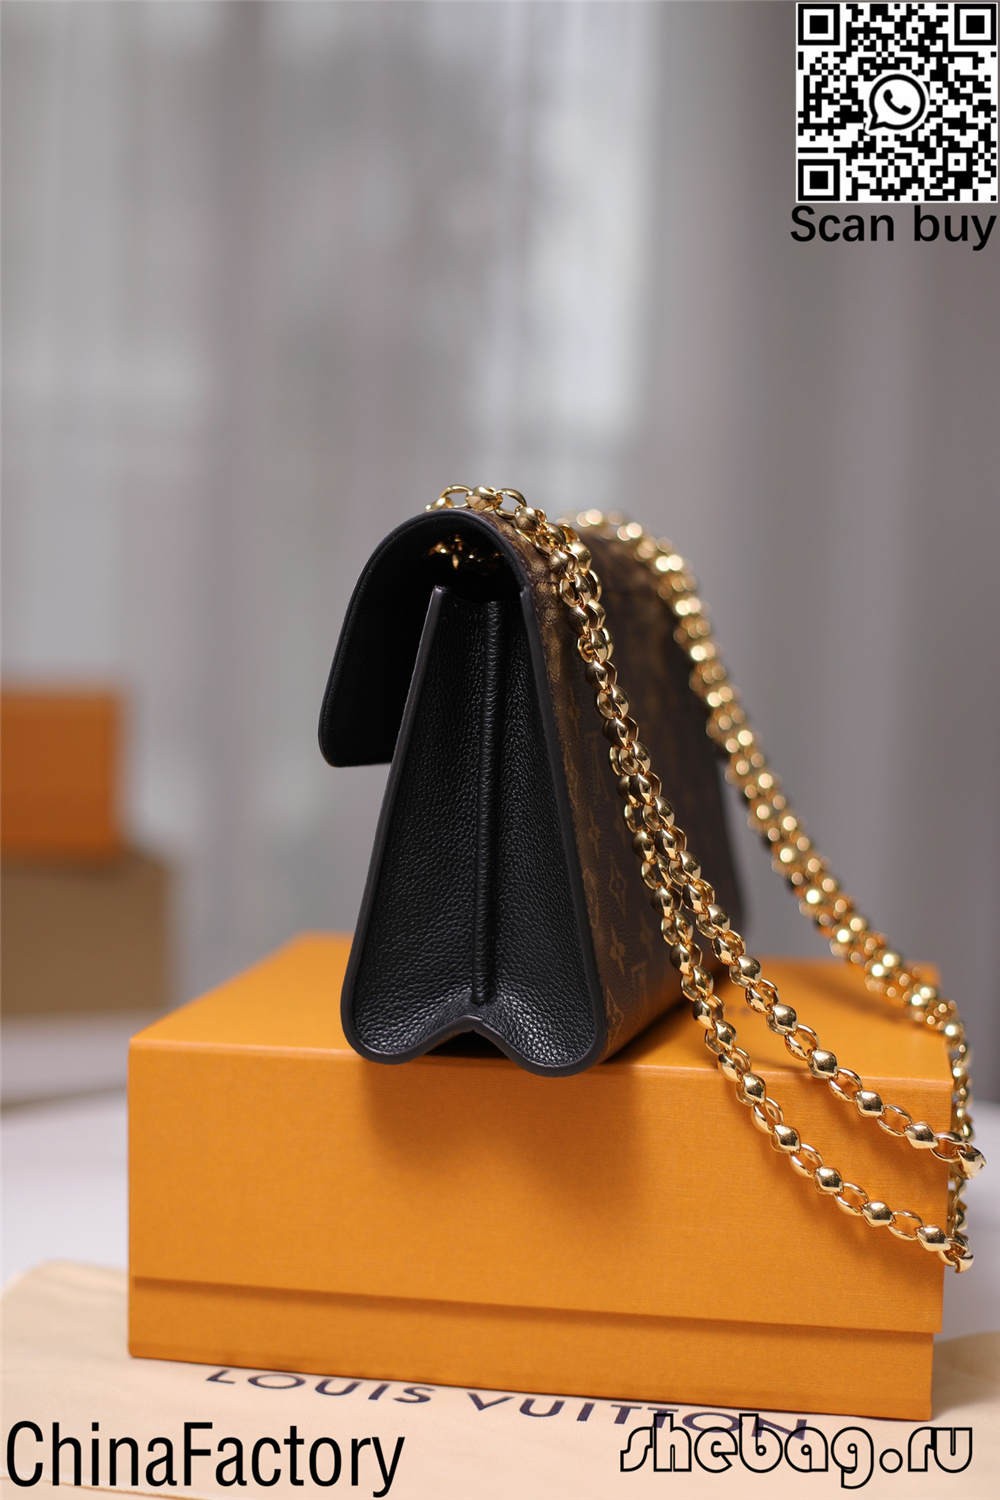 Replica e lirë e çantave louis vuitton pazar në internet (edicion i ri 2022)-Dyqani në internet i çantave të rreme Louis Vuitton me cilësi më të mirë, çanta kopjuese ru